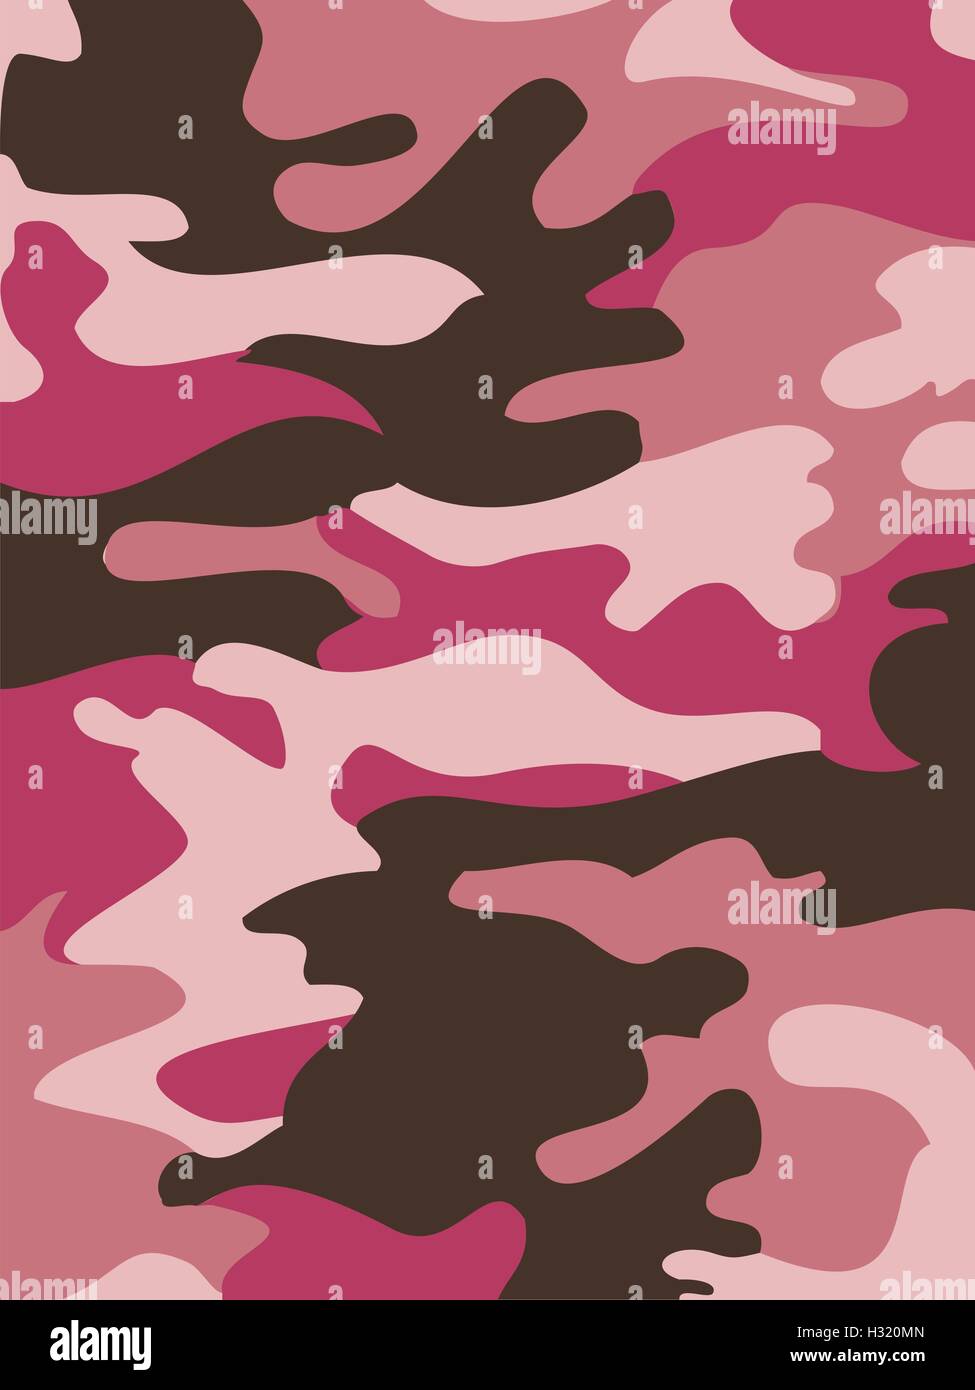 Camouflage Muster Hintergrund nahtlose Vektor Illustration. Klassische Kleidung Stil Maskierung camo wiederholen. Rosa Farben marine Stock Vektor